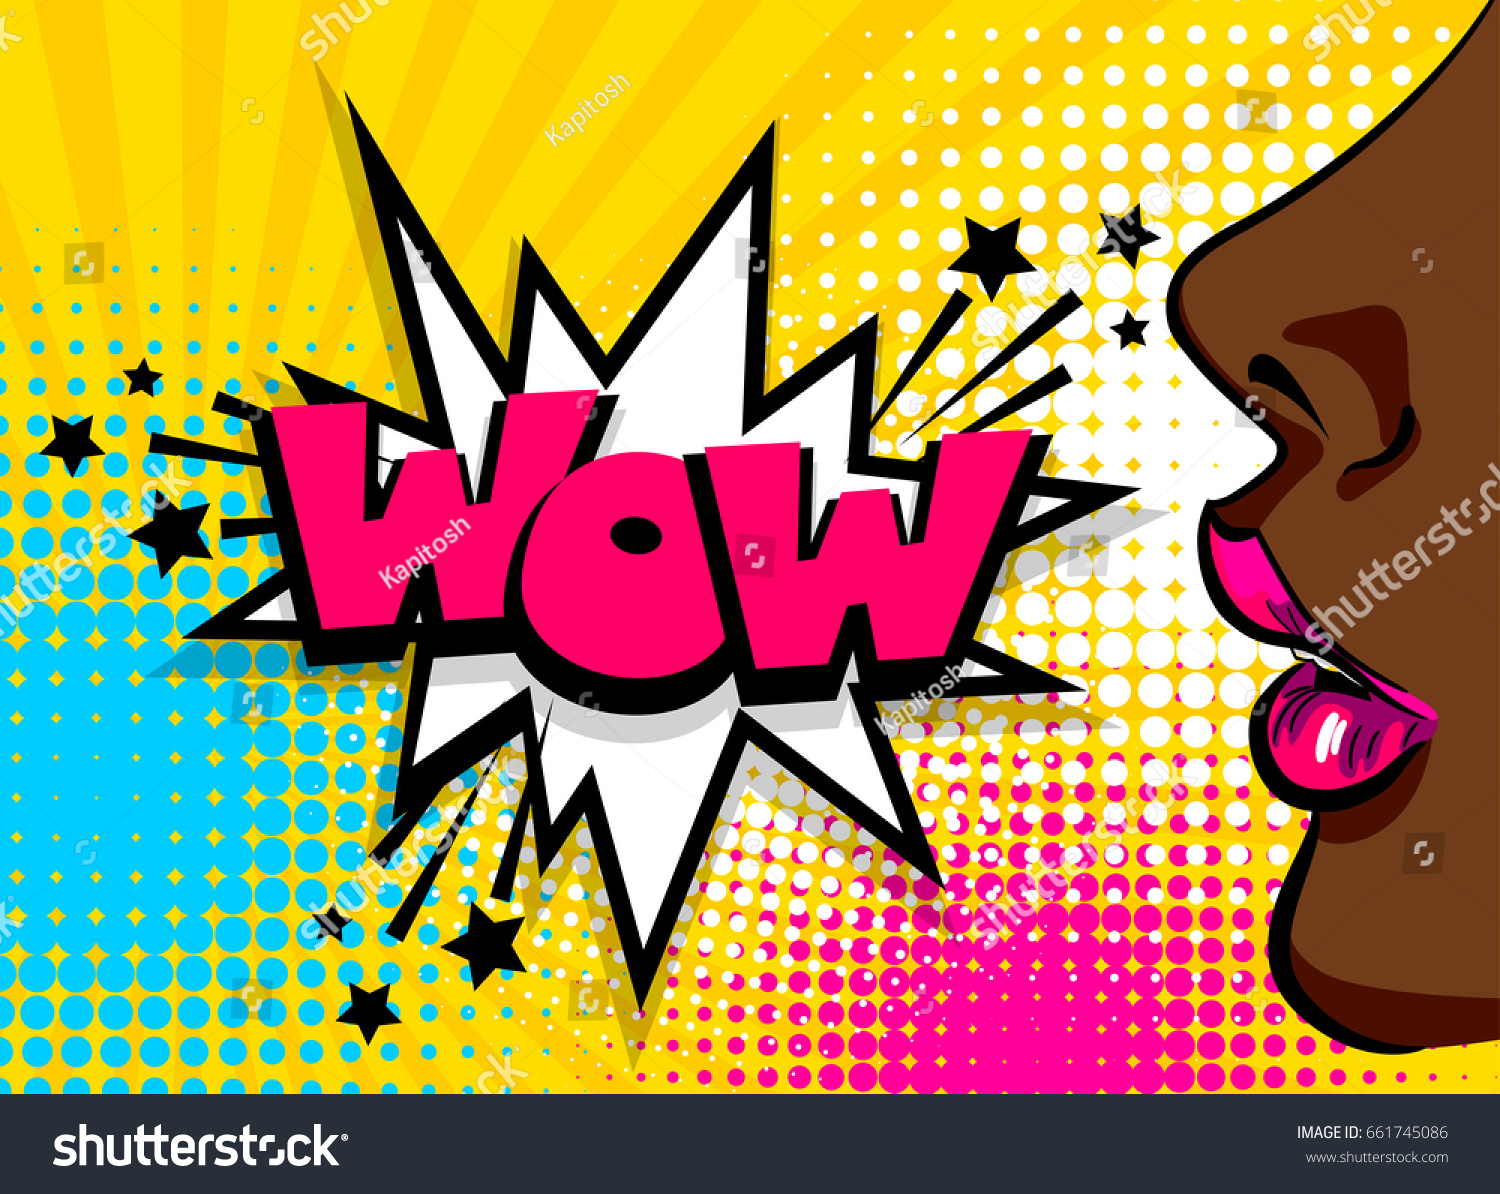 漫画のビンテージポスター 黒いアフリカ系アメリカ人のポップアートの女の子がスピーチバブルを話すwowベクターフォントイラスト セール広告バナーオープンセクシーな唇ワンダーポップアートの女性スタイル のベクター画像素材 ロイヤリティフリー